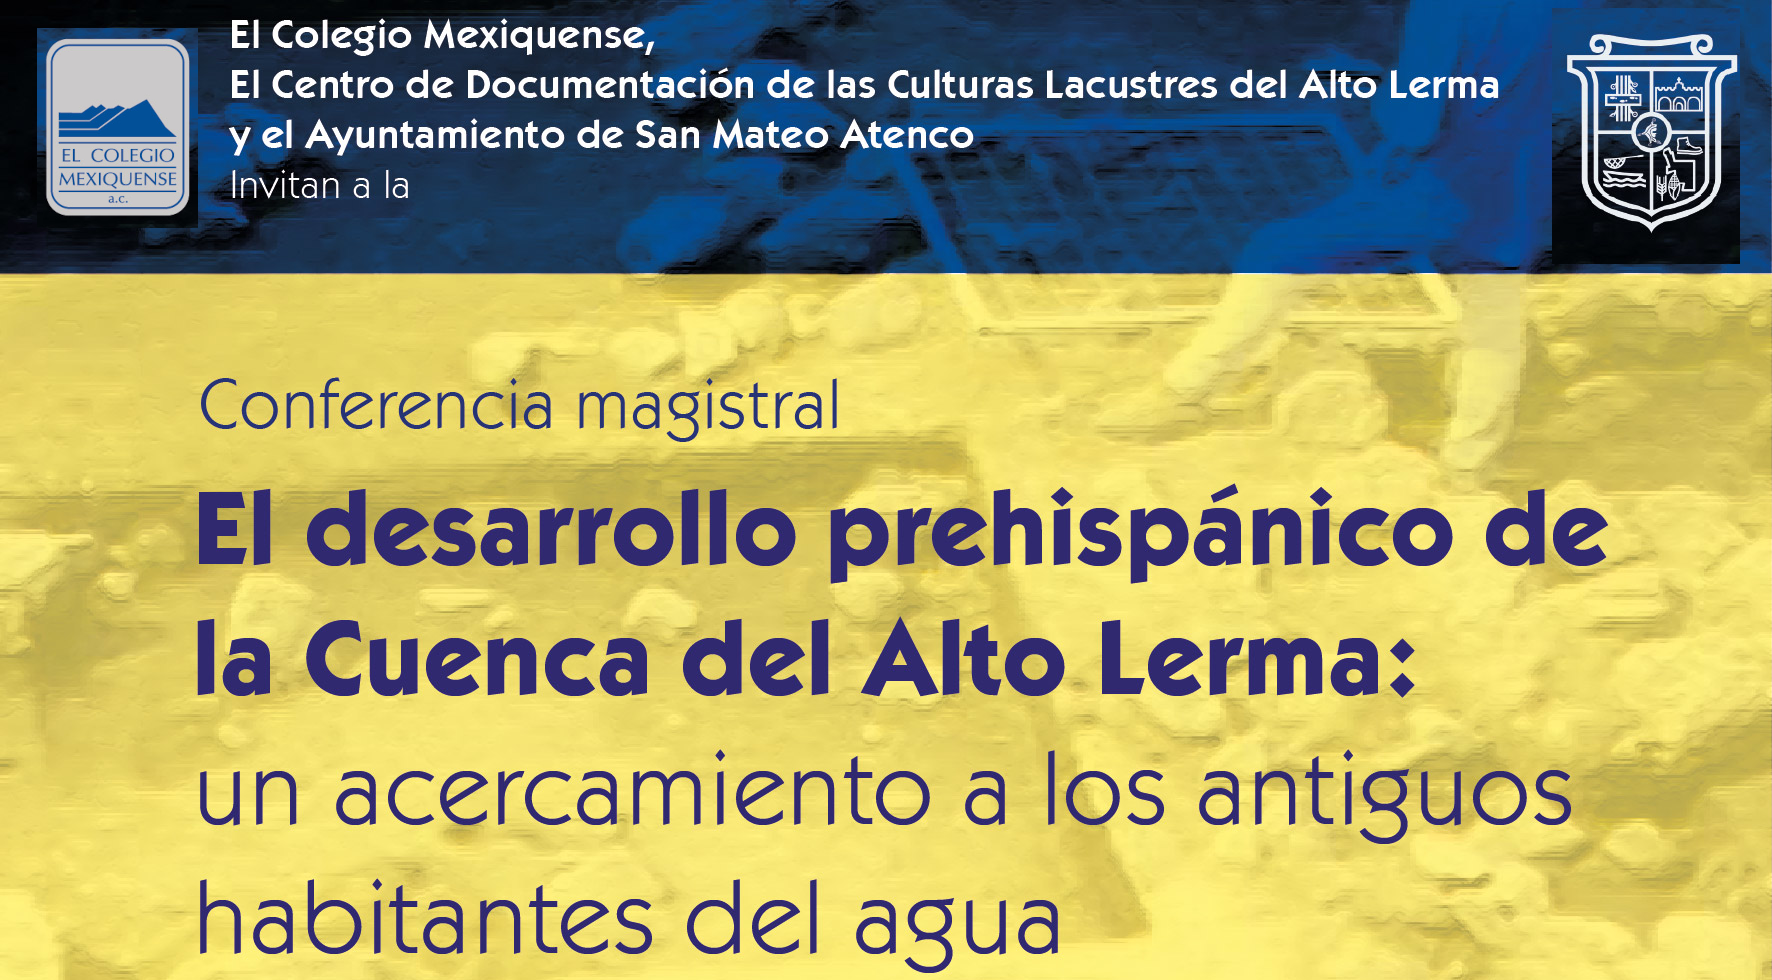 Conferencia magistral. El desarrollo prehispánico de la Cuenca del Alto Lerma: un acercamiento a los antiguos habitantes del agua